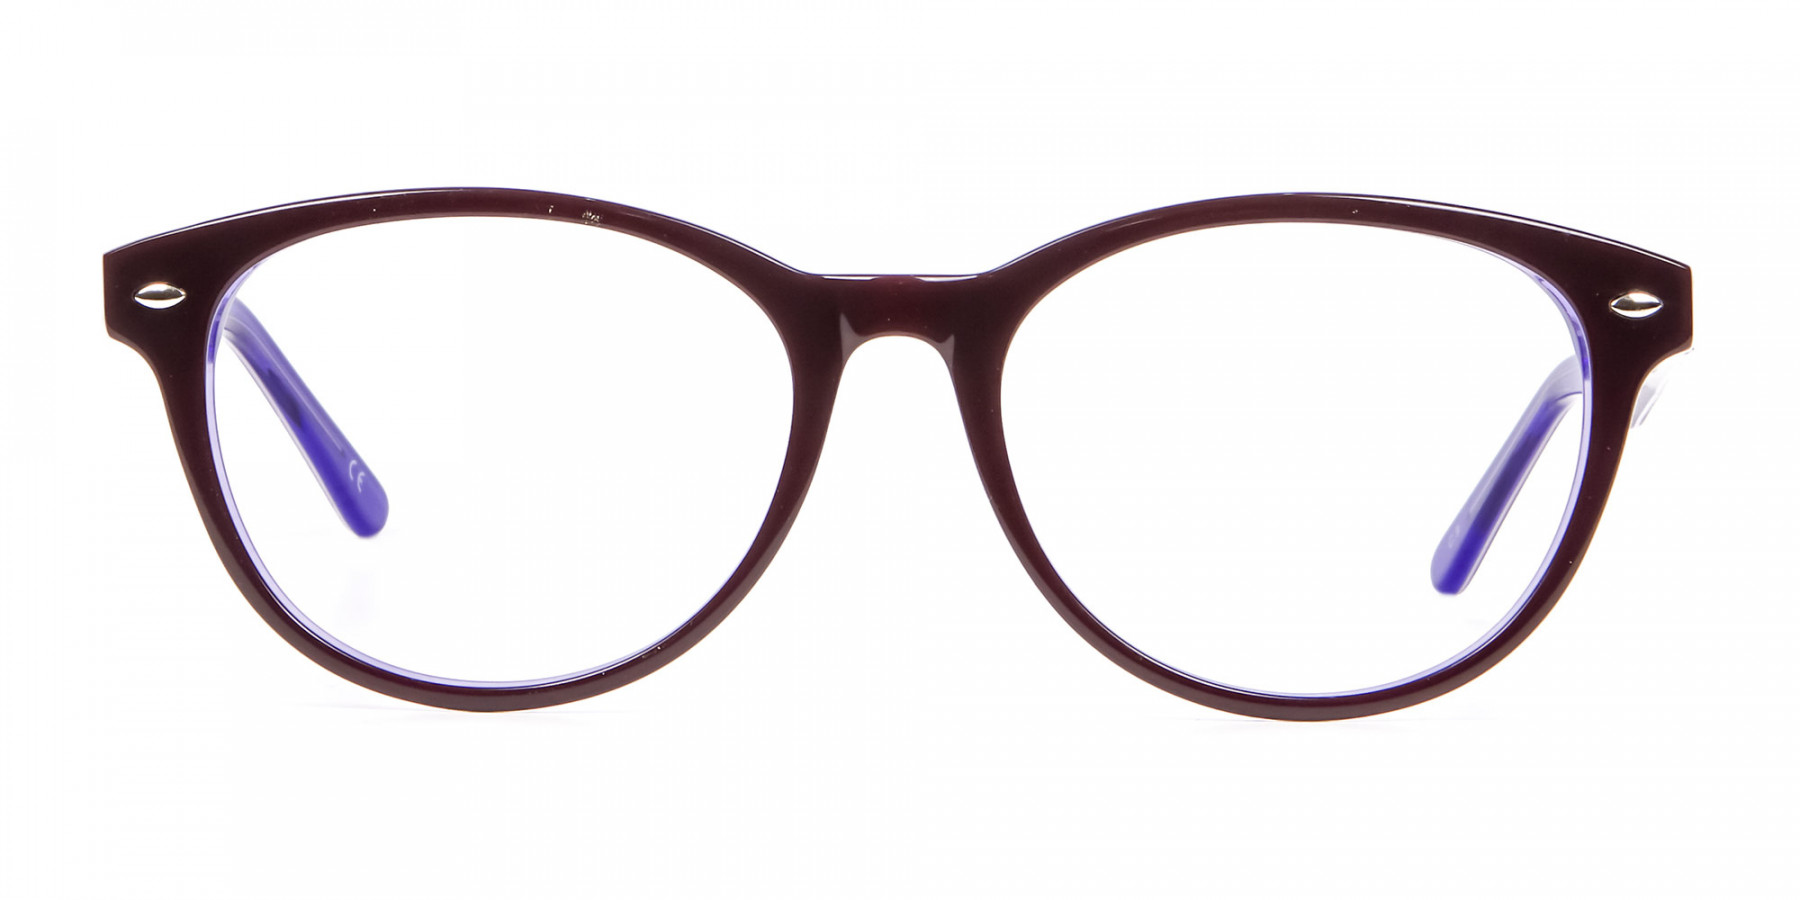 Black & Violet Eyeglasses Frame